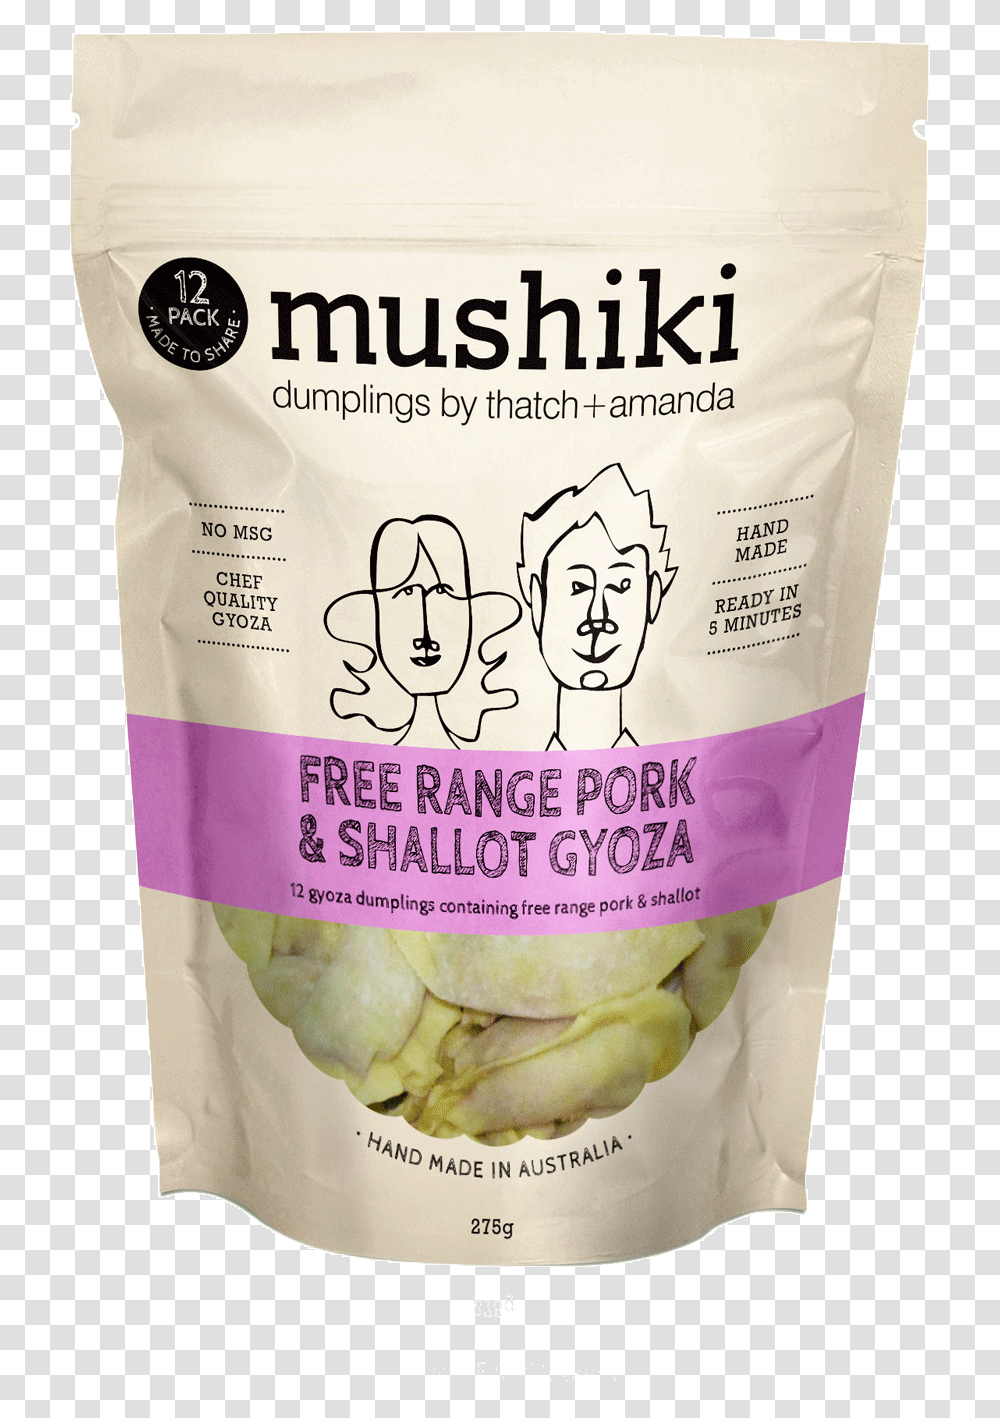 Products - Mushiki Pork, Plant, Food, Bottle, Vegetable Transparent Png